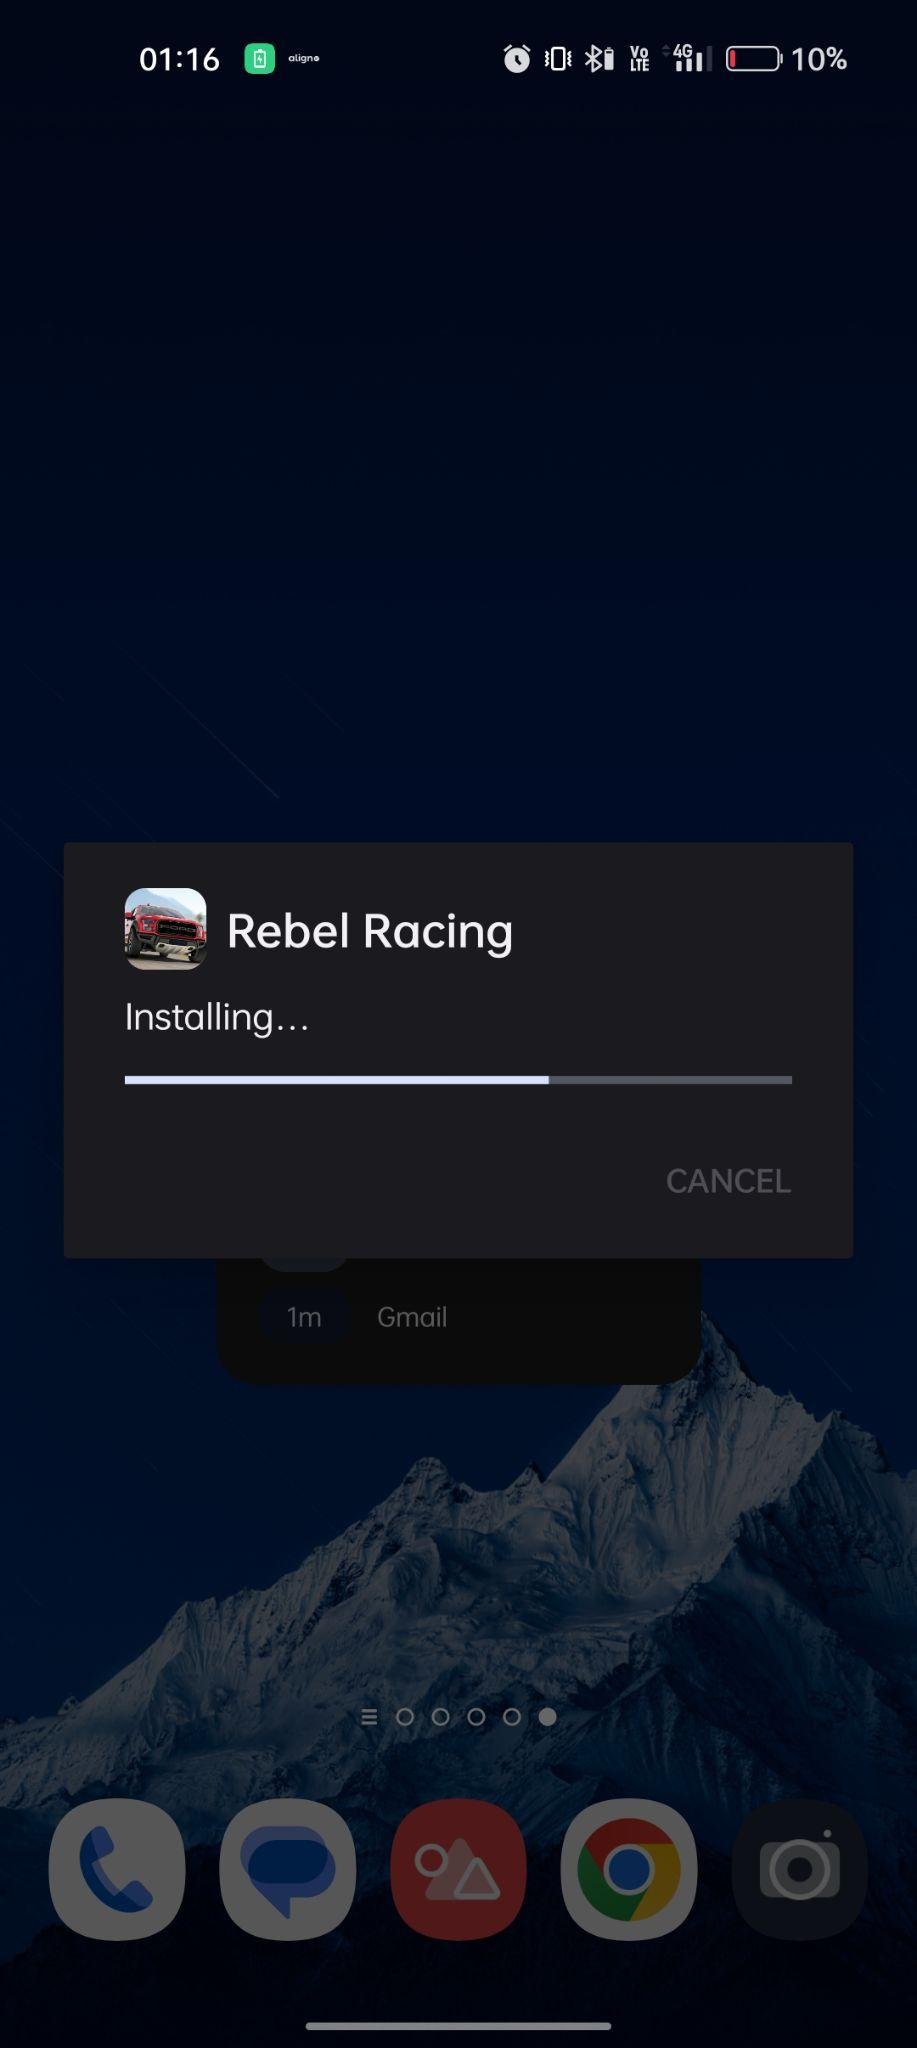 Rebel Racing apk installing